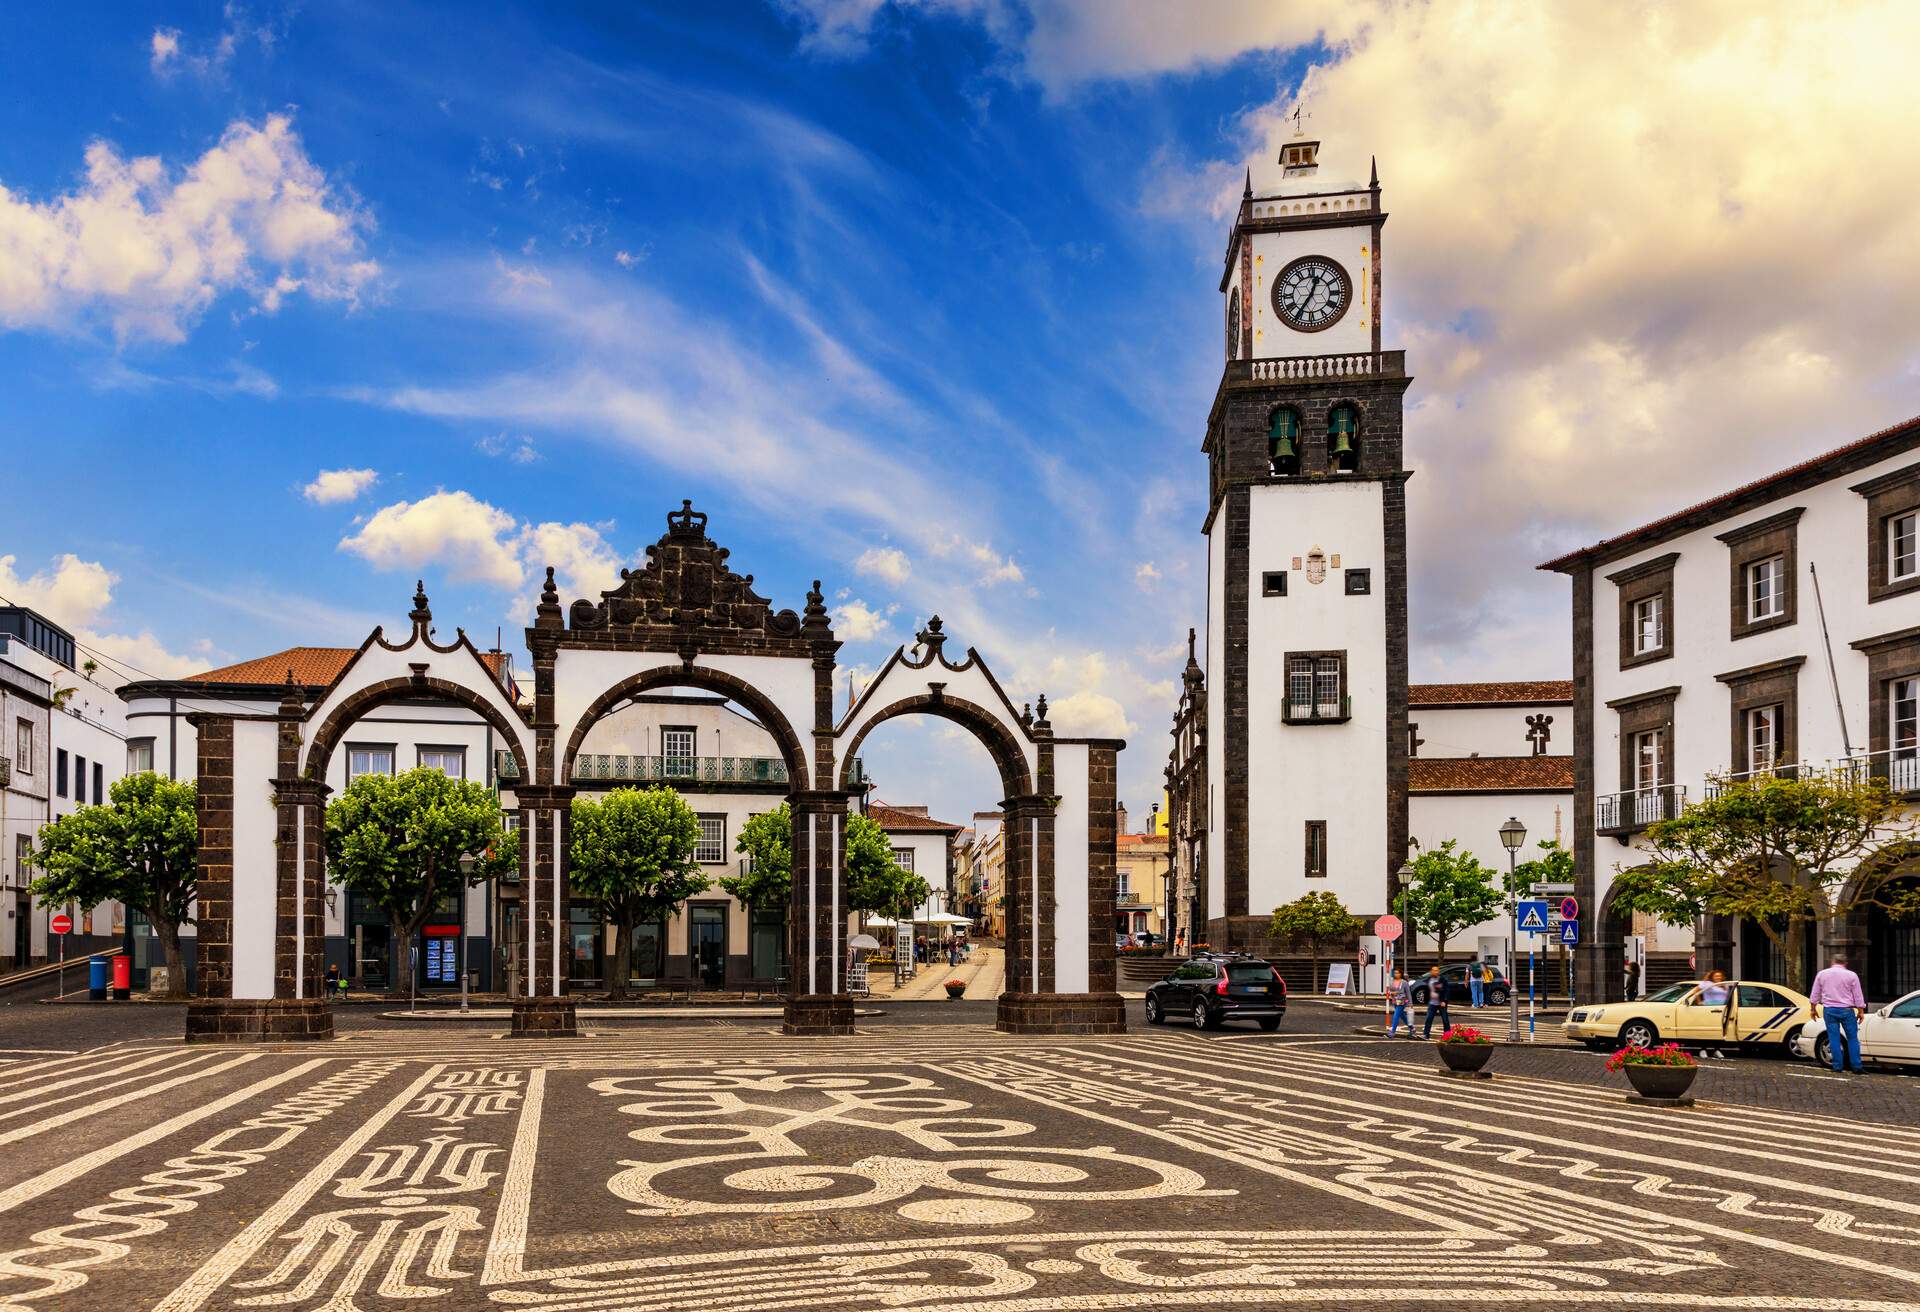 Portas da Cidade, the city symbol of Ponta Delgada in Sao Miguel Island in Azores, Portugal. Portas da Cidade (Gates to the City), Ponta Delgada, Sao Miguel.